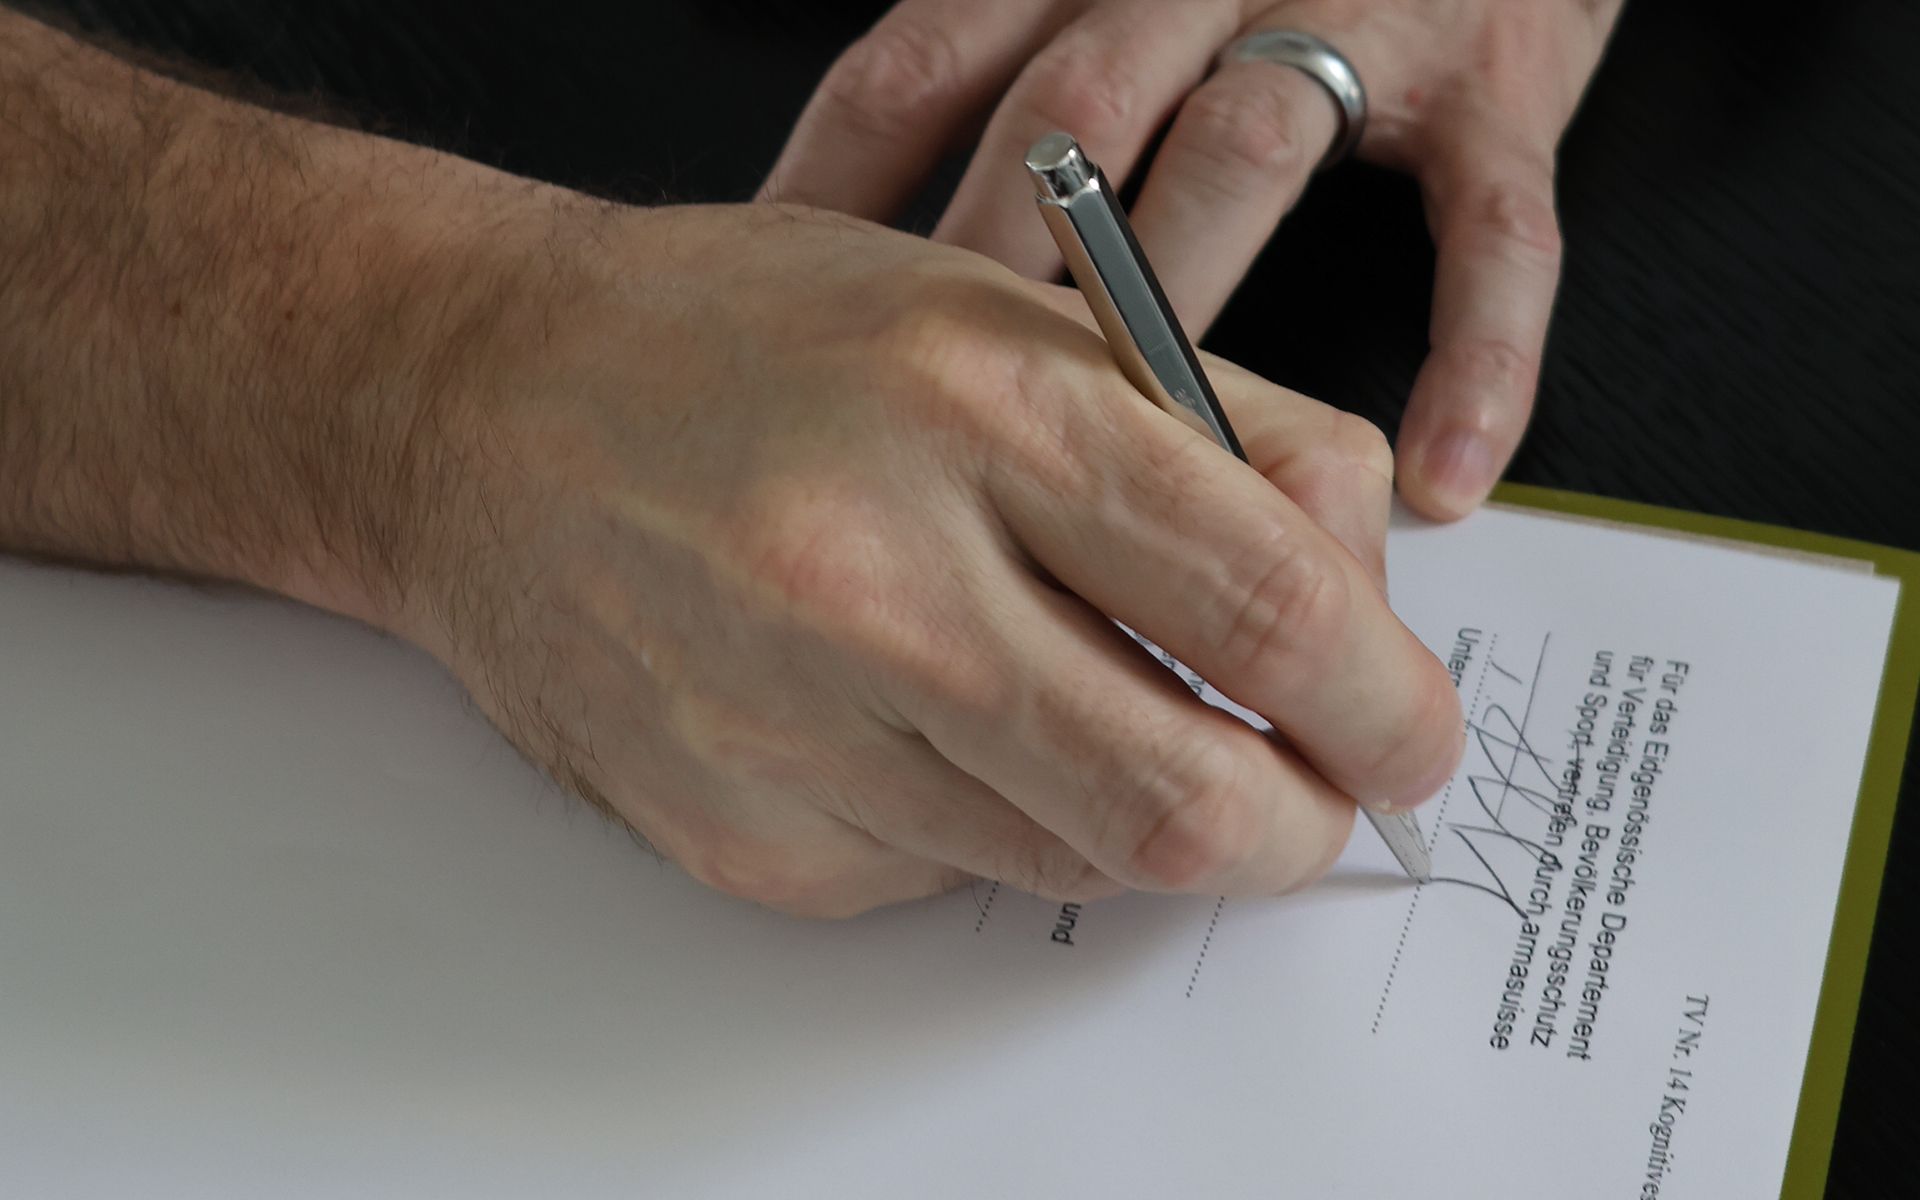 Le document « Accord d’exécution technique » est signé au stylo à bille par le chef d’armasuisse S+T